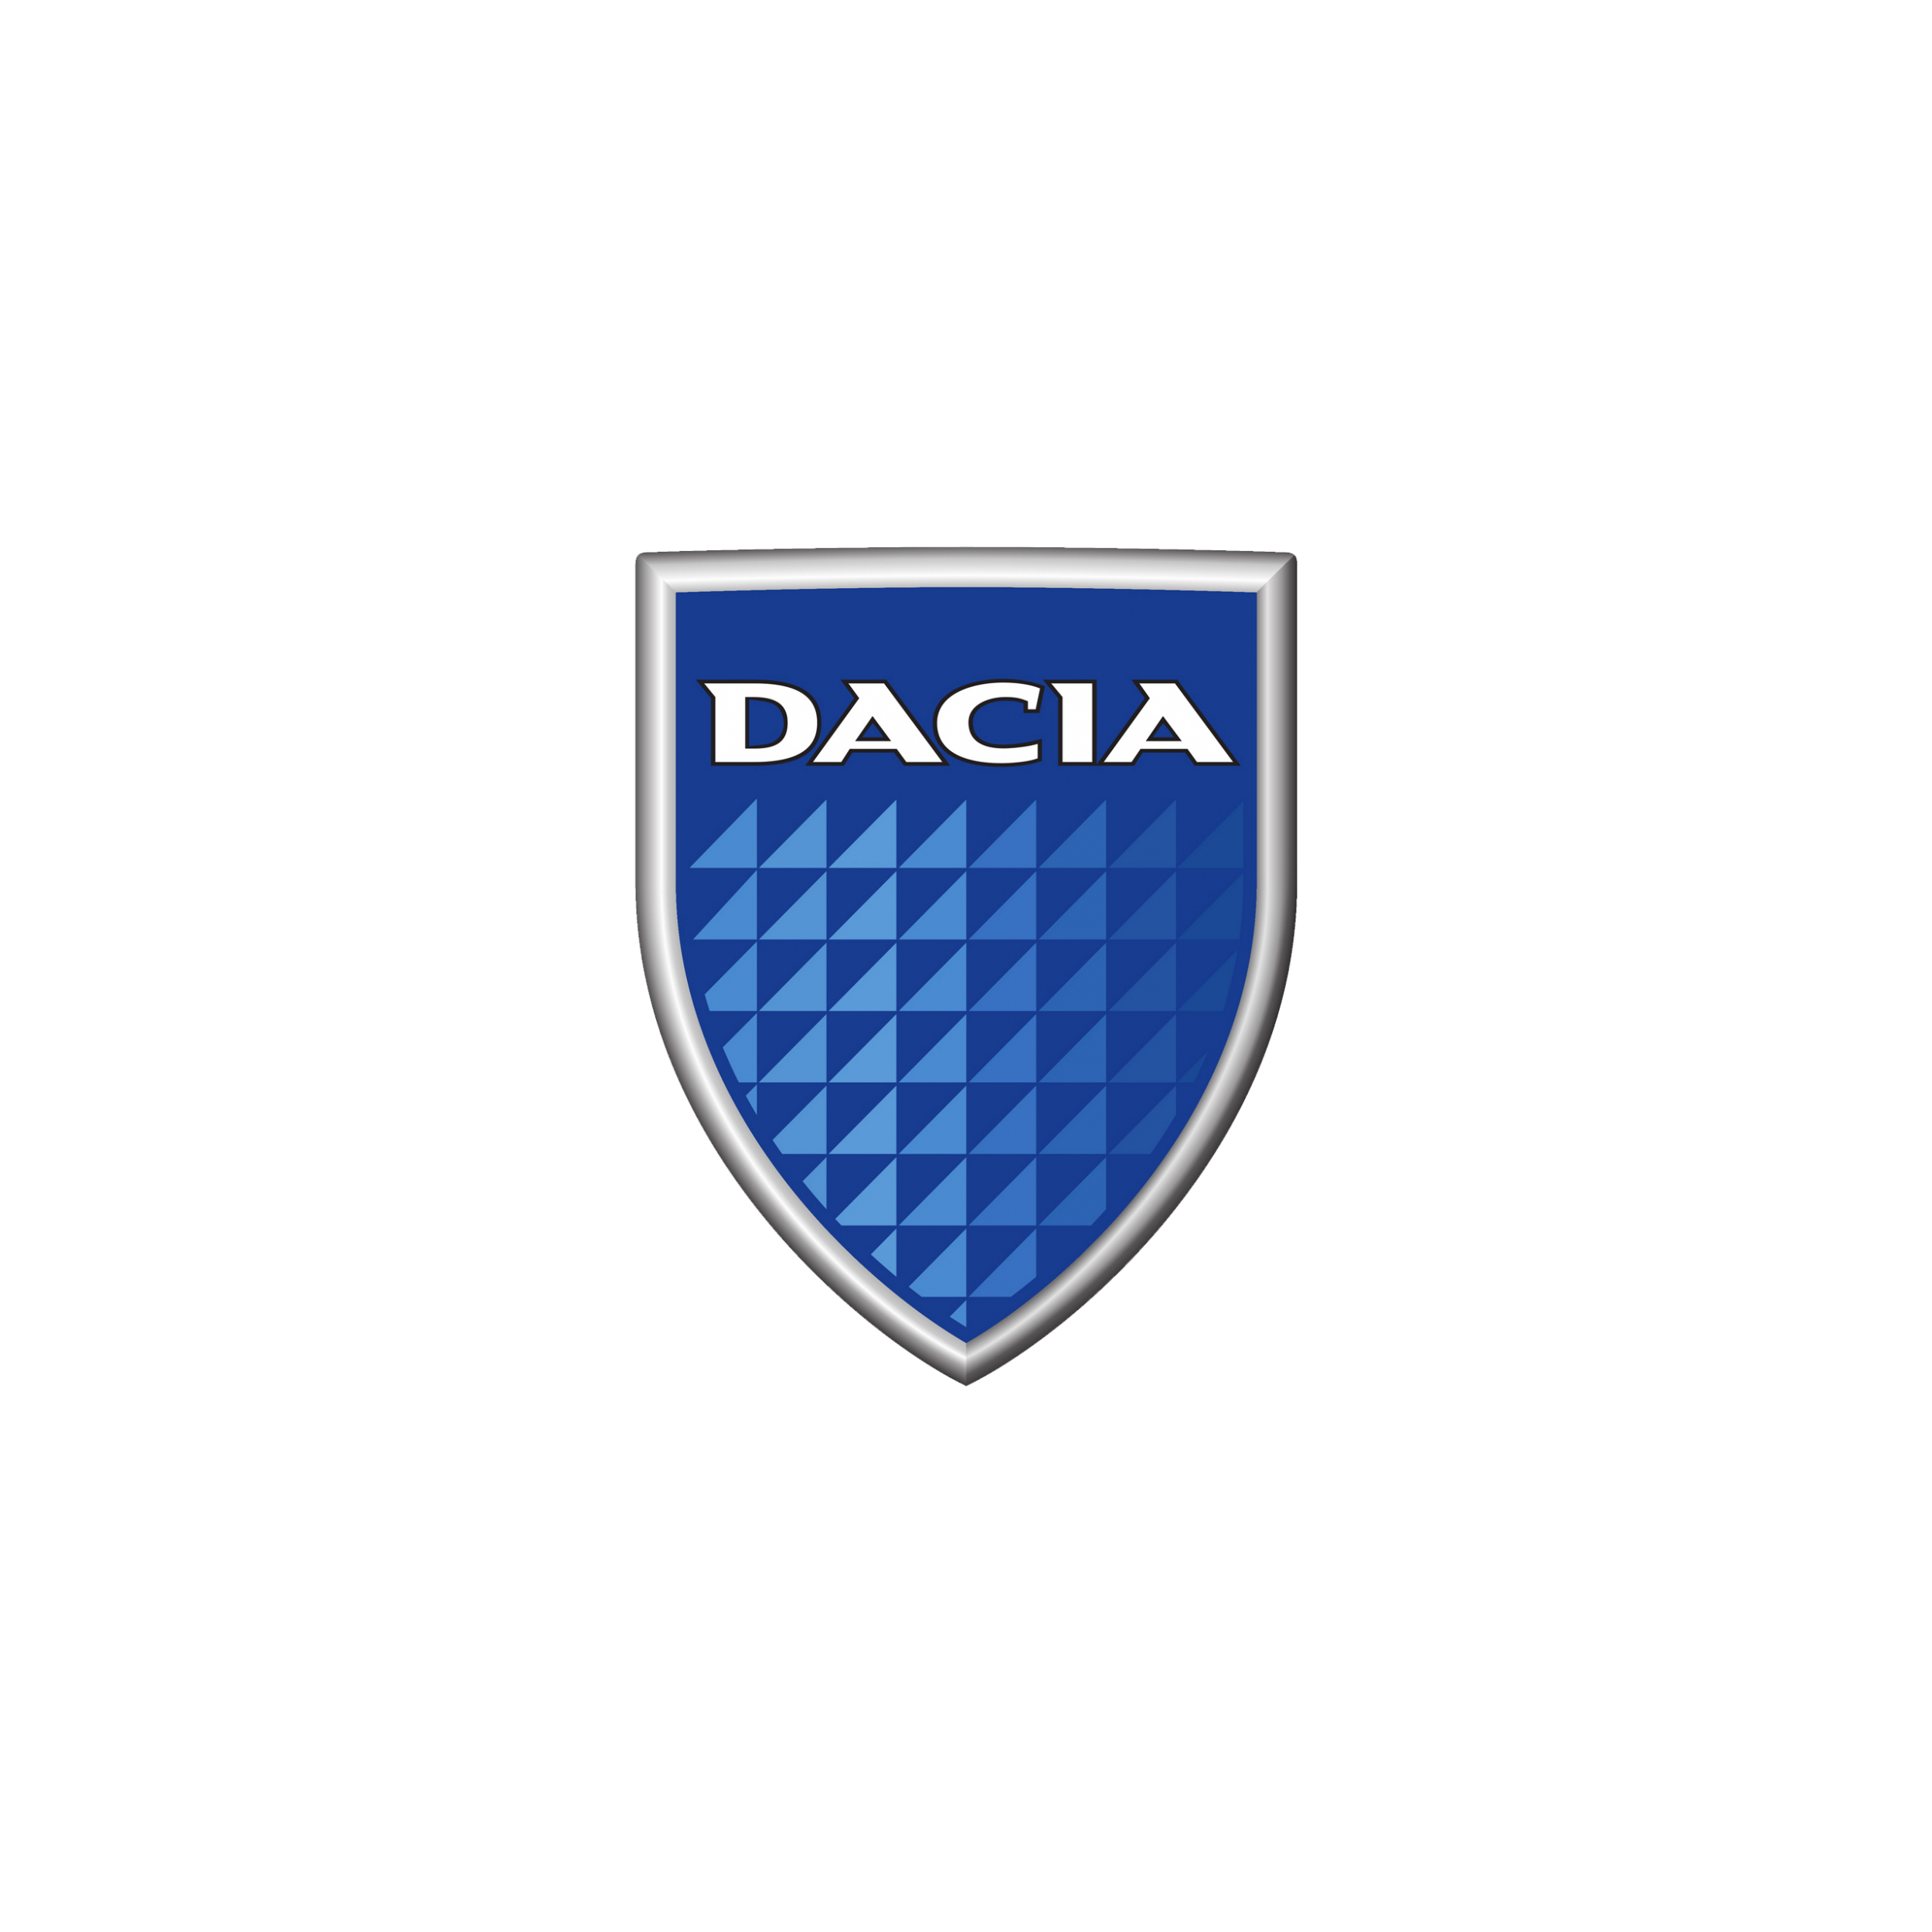 dacia-logo-2003-2560x1440.png